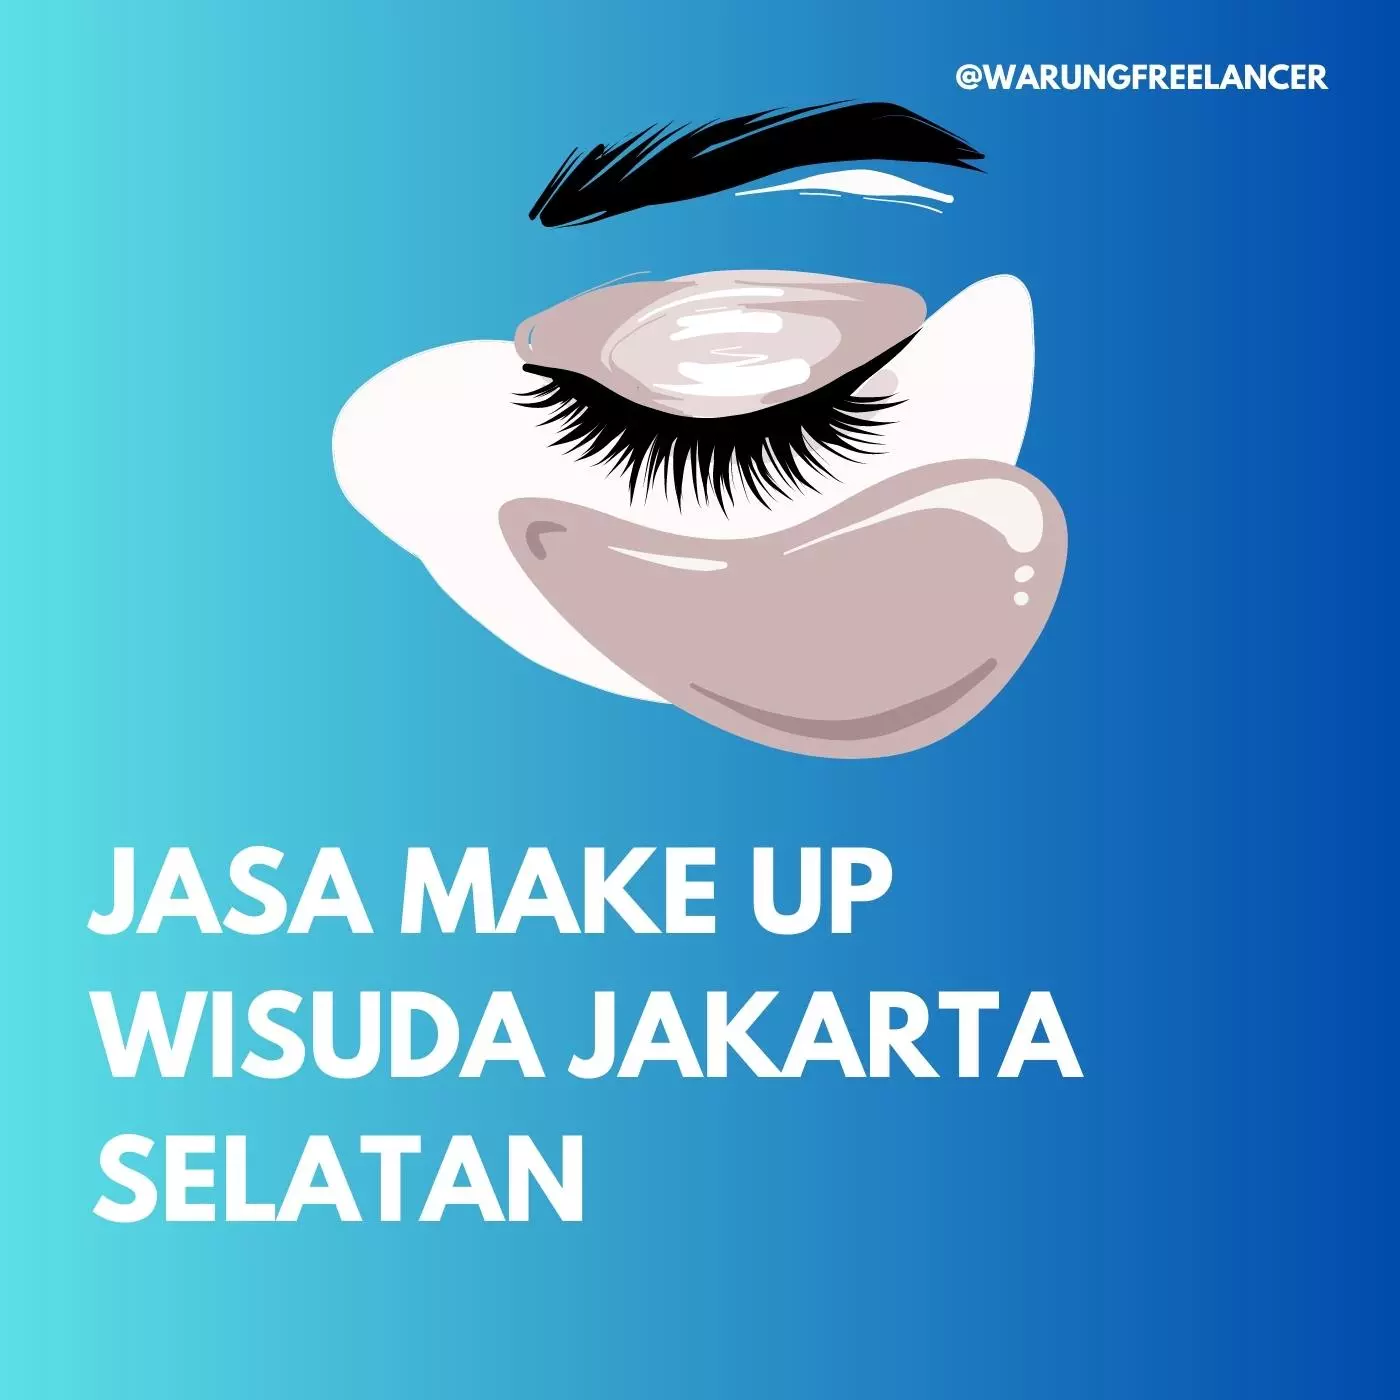 Jasa Make Up Wisuda Jakarta Selatan 